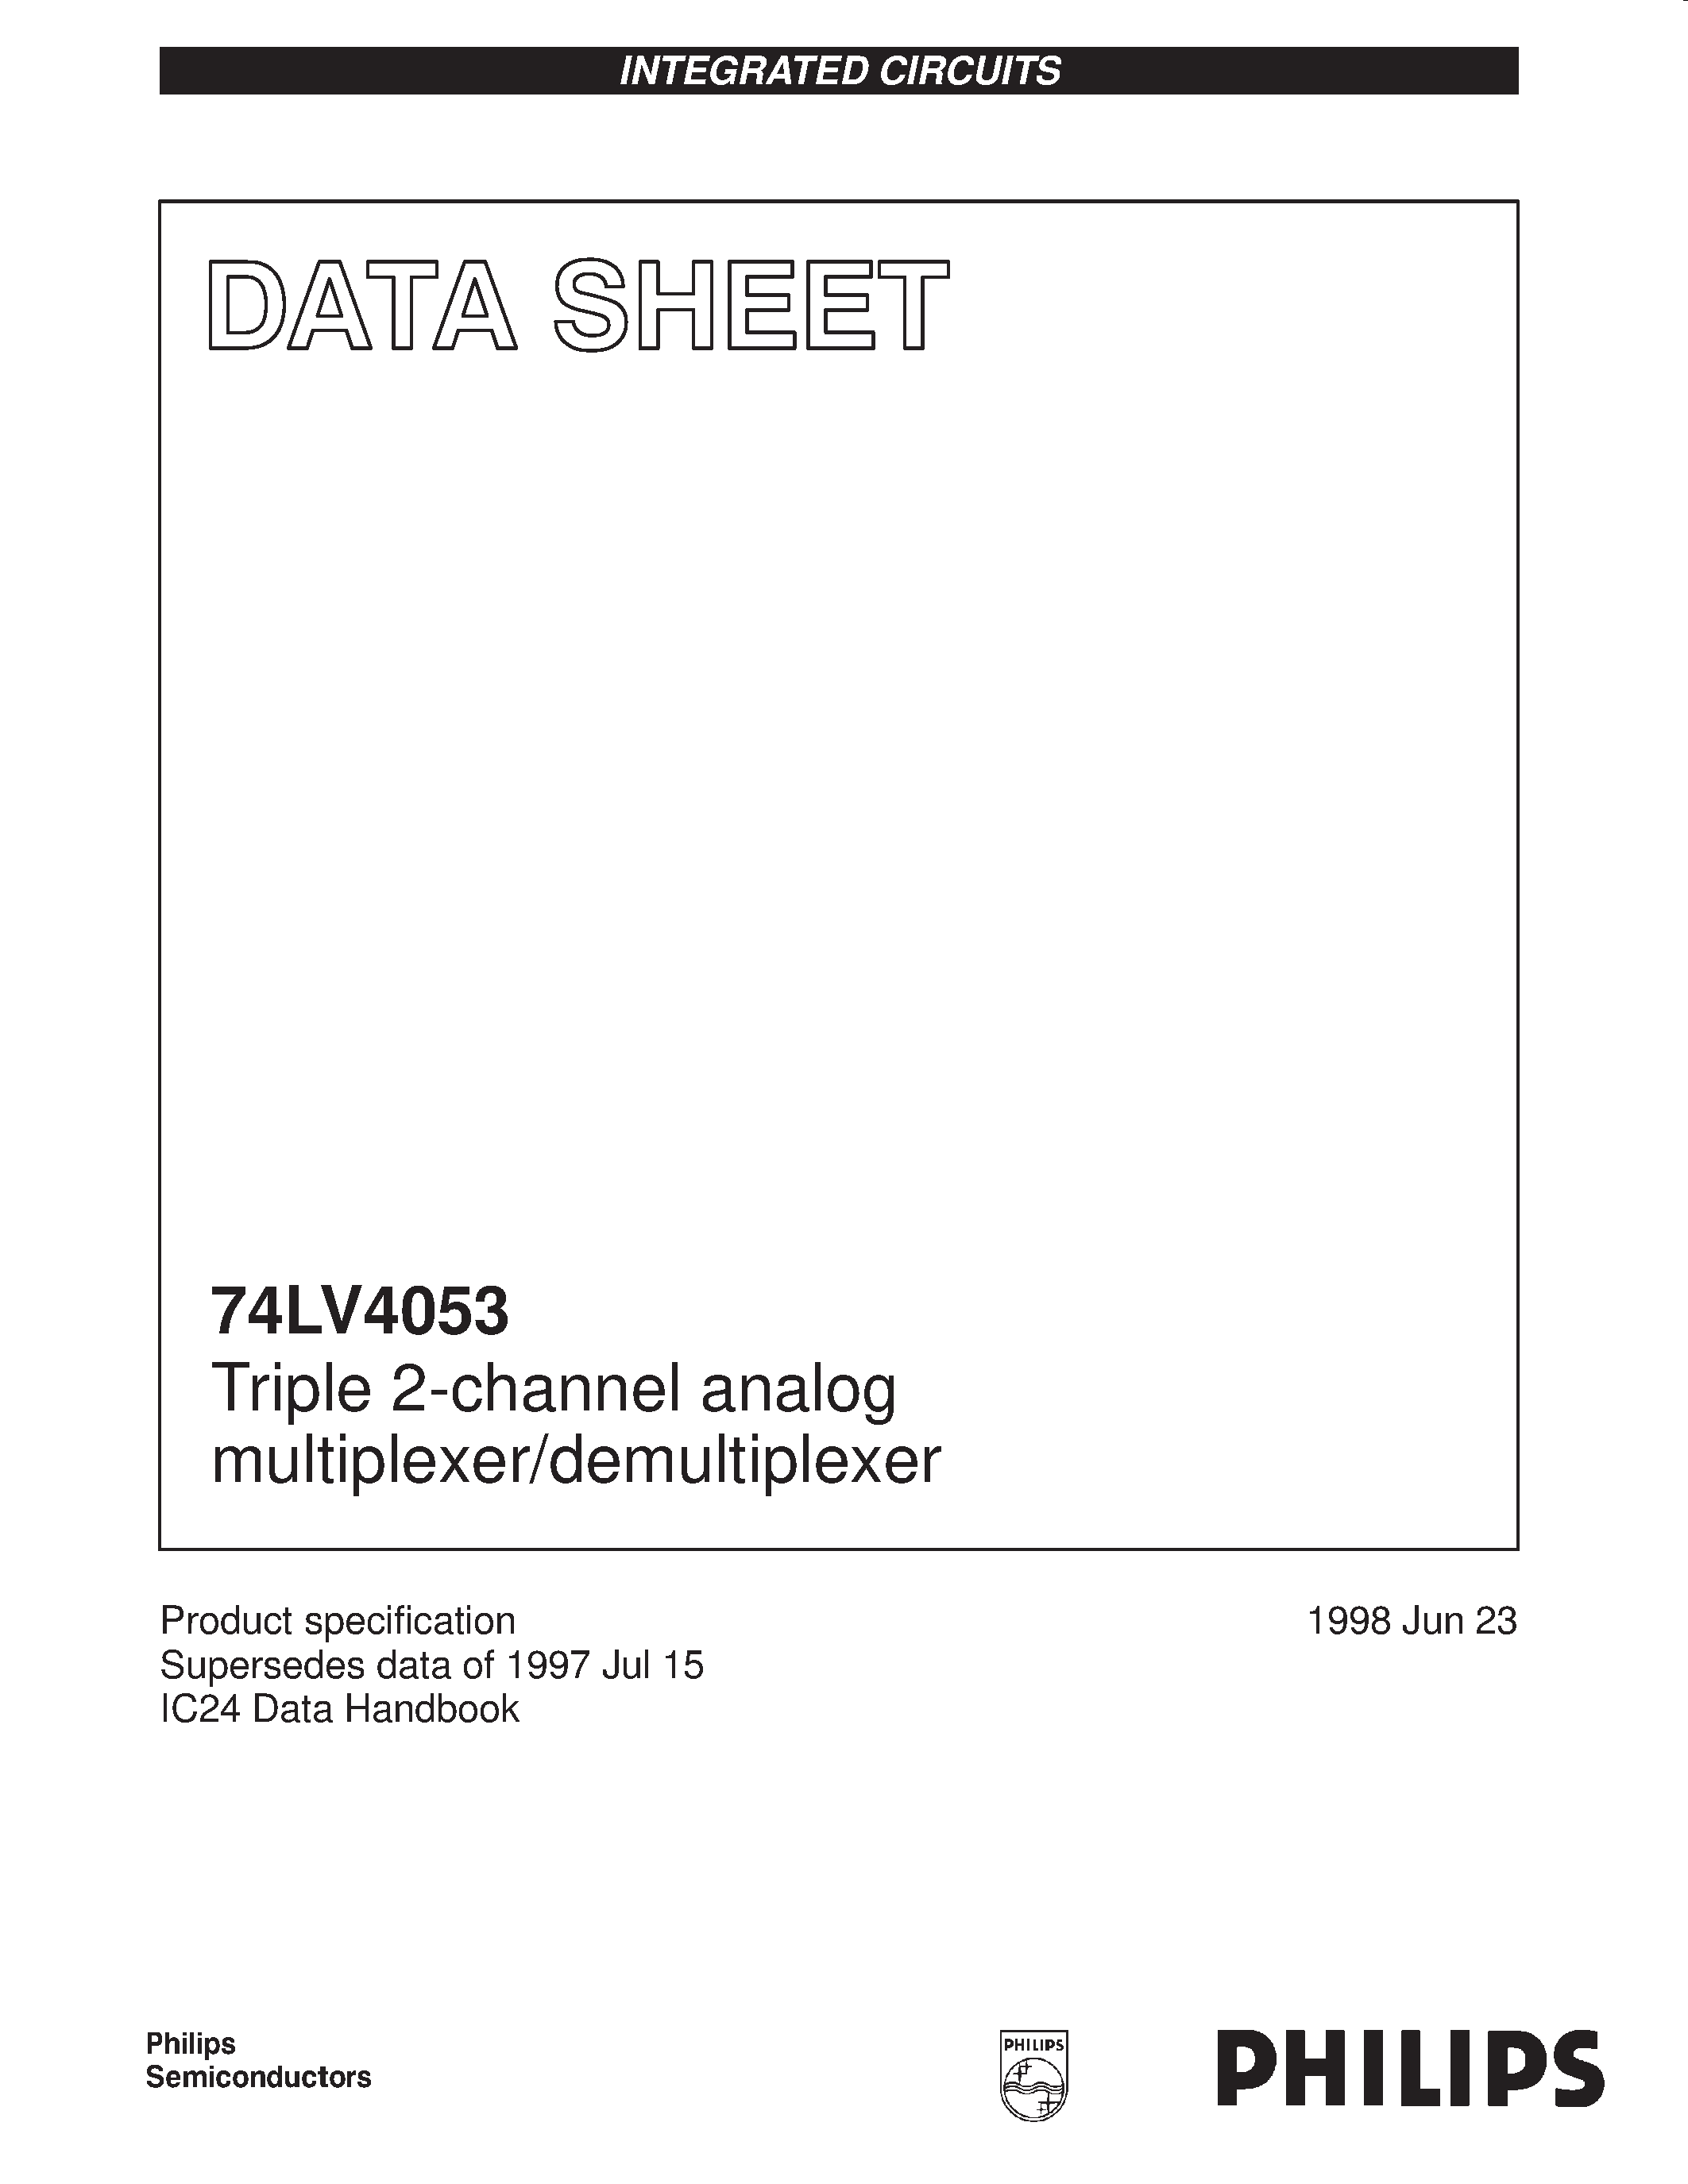 Даташит 74LV4053 - Triple 2-channel analog multiplexer/demultiplexer страница 1